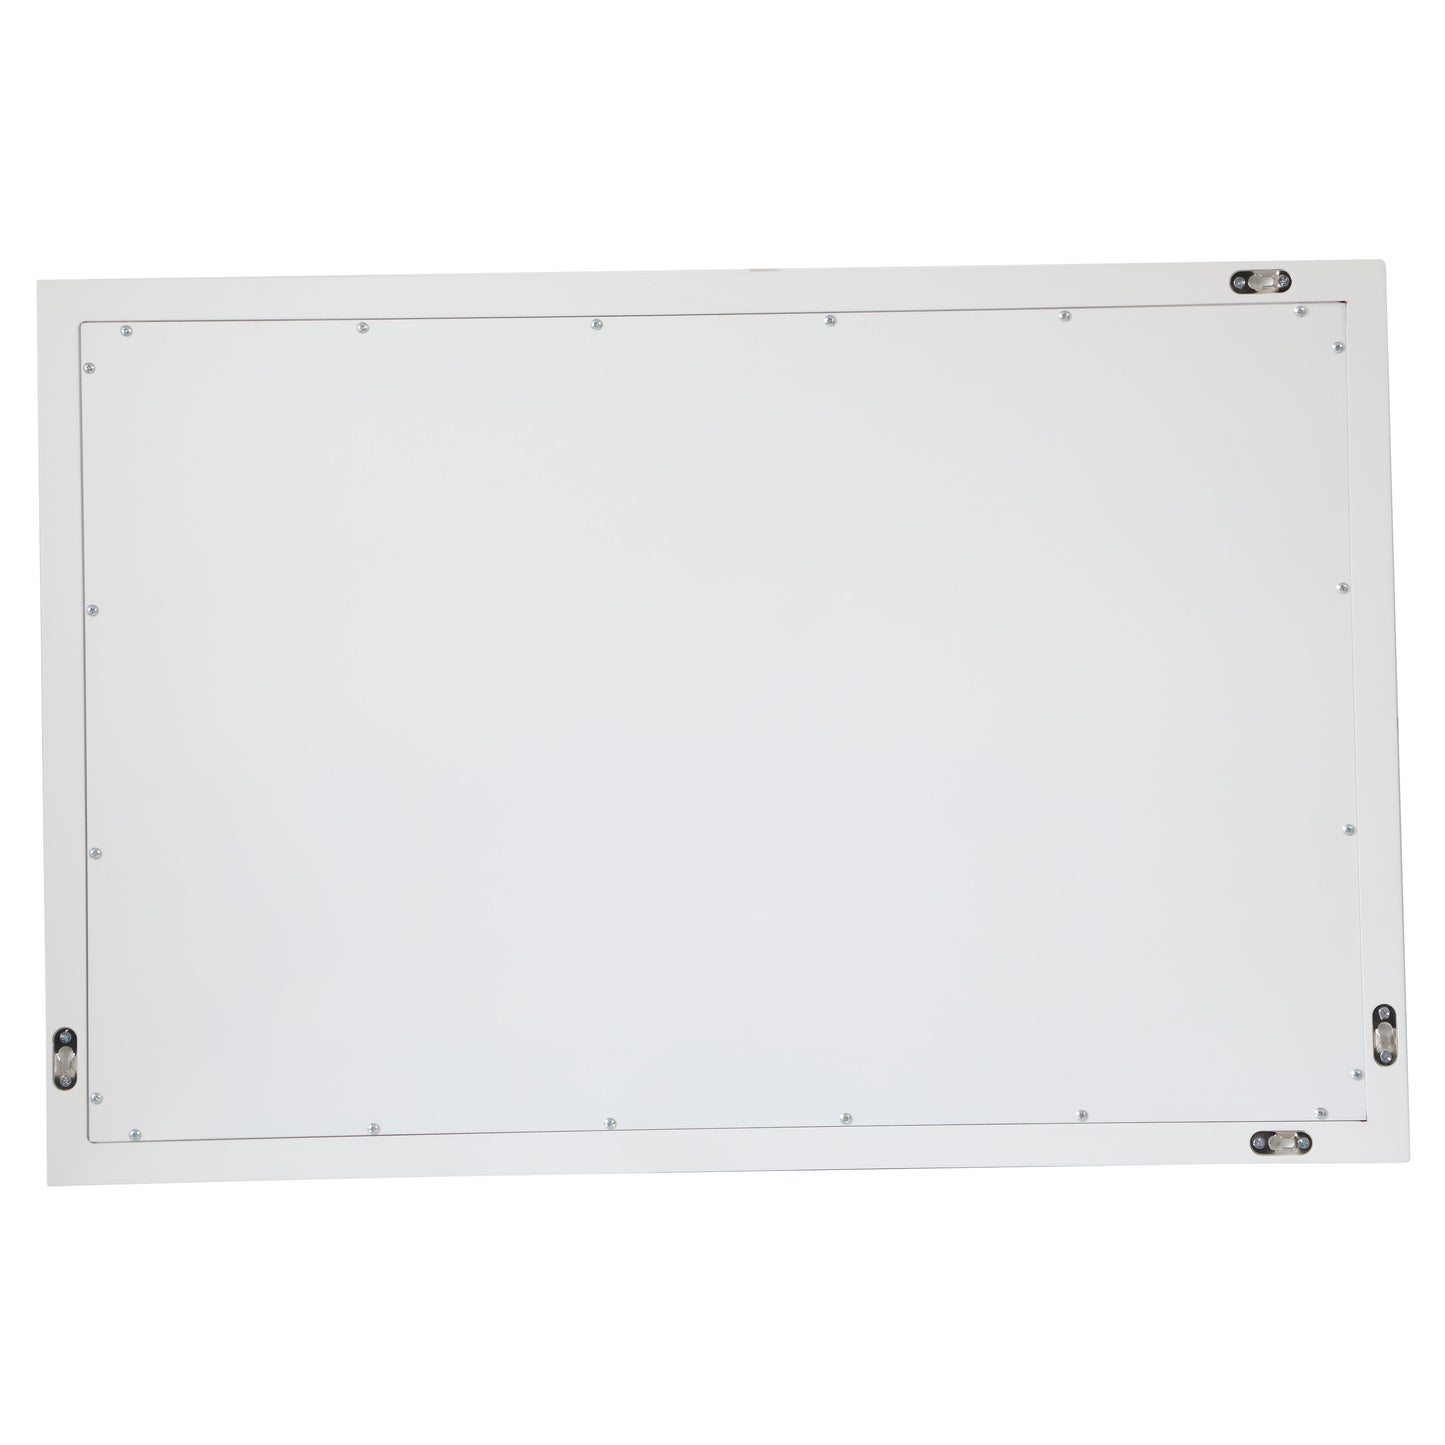 VM22436WH Aqua 24" x 36" Framed Rectangular Mirror in White